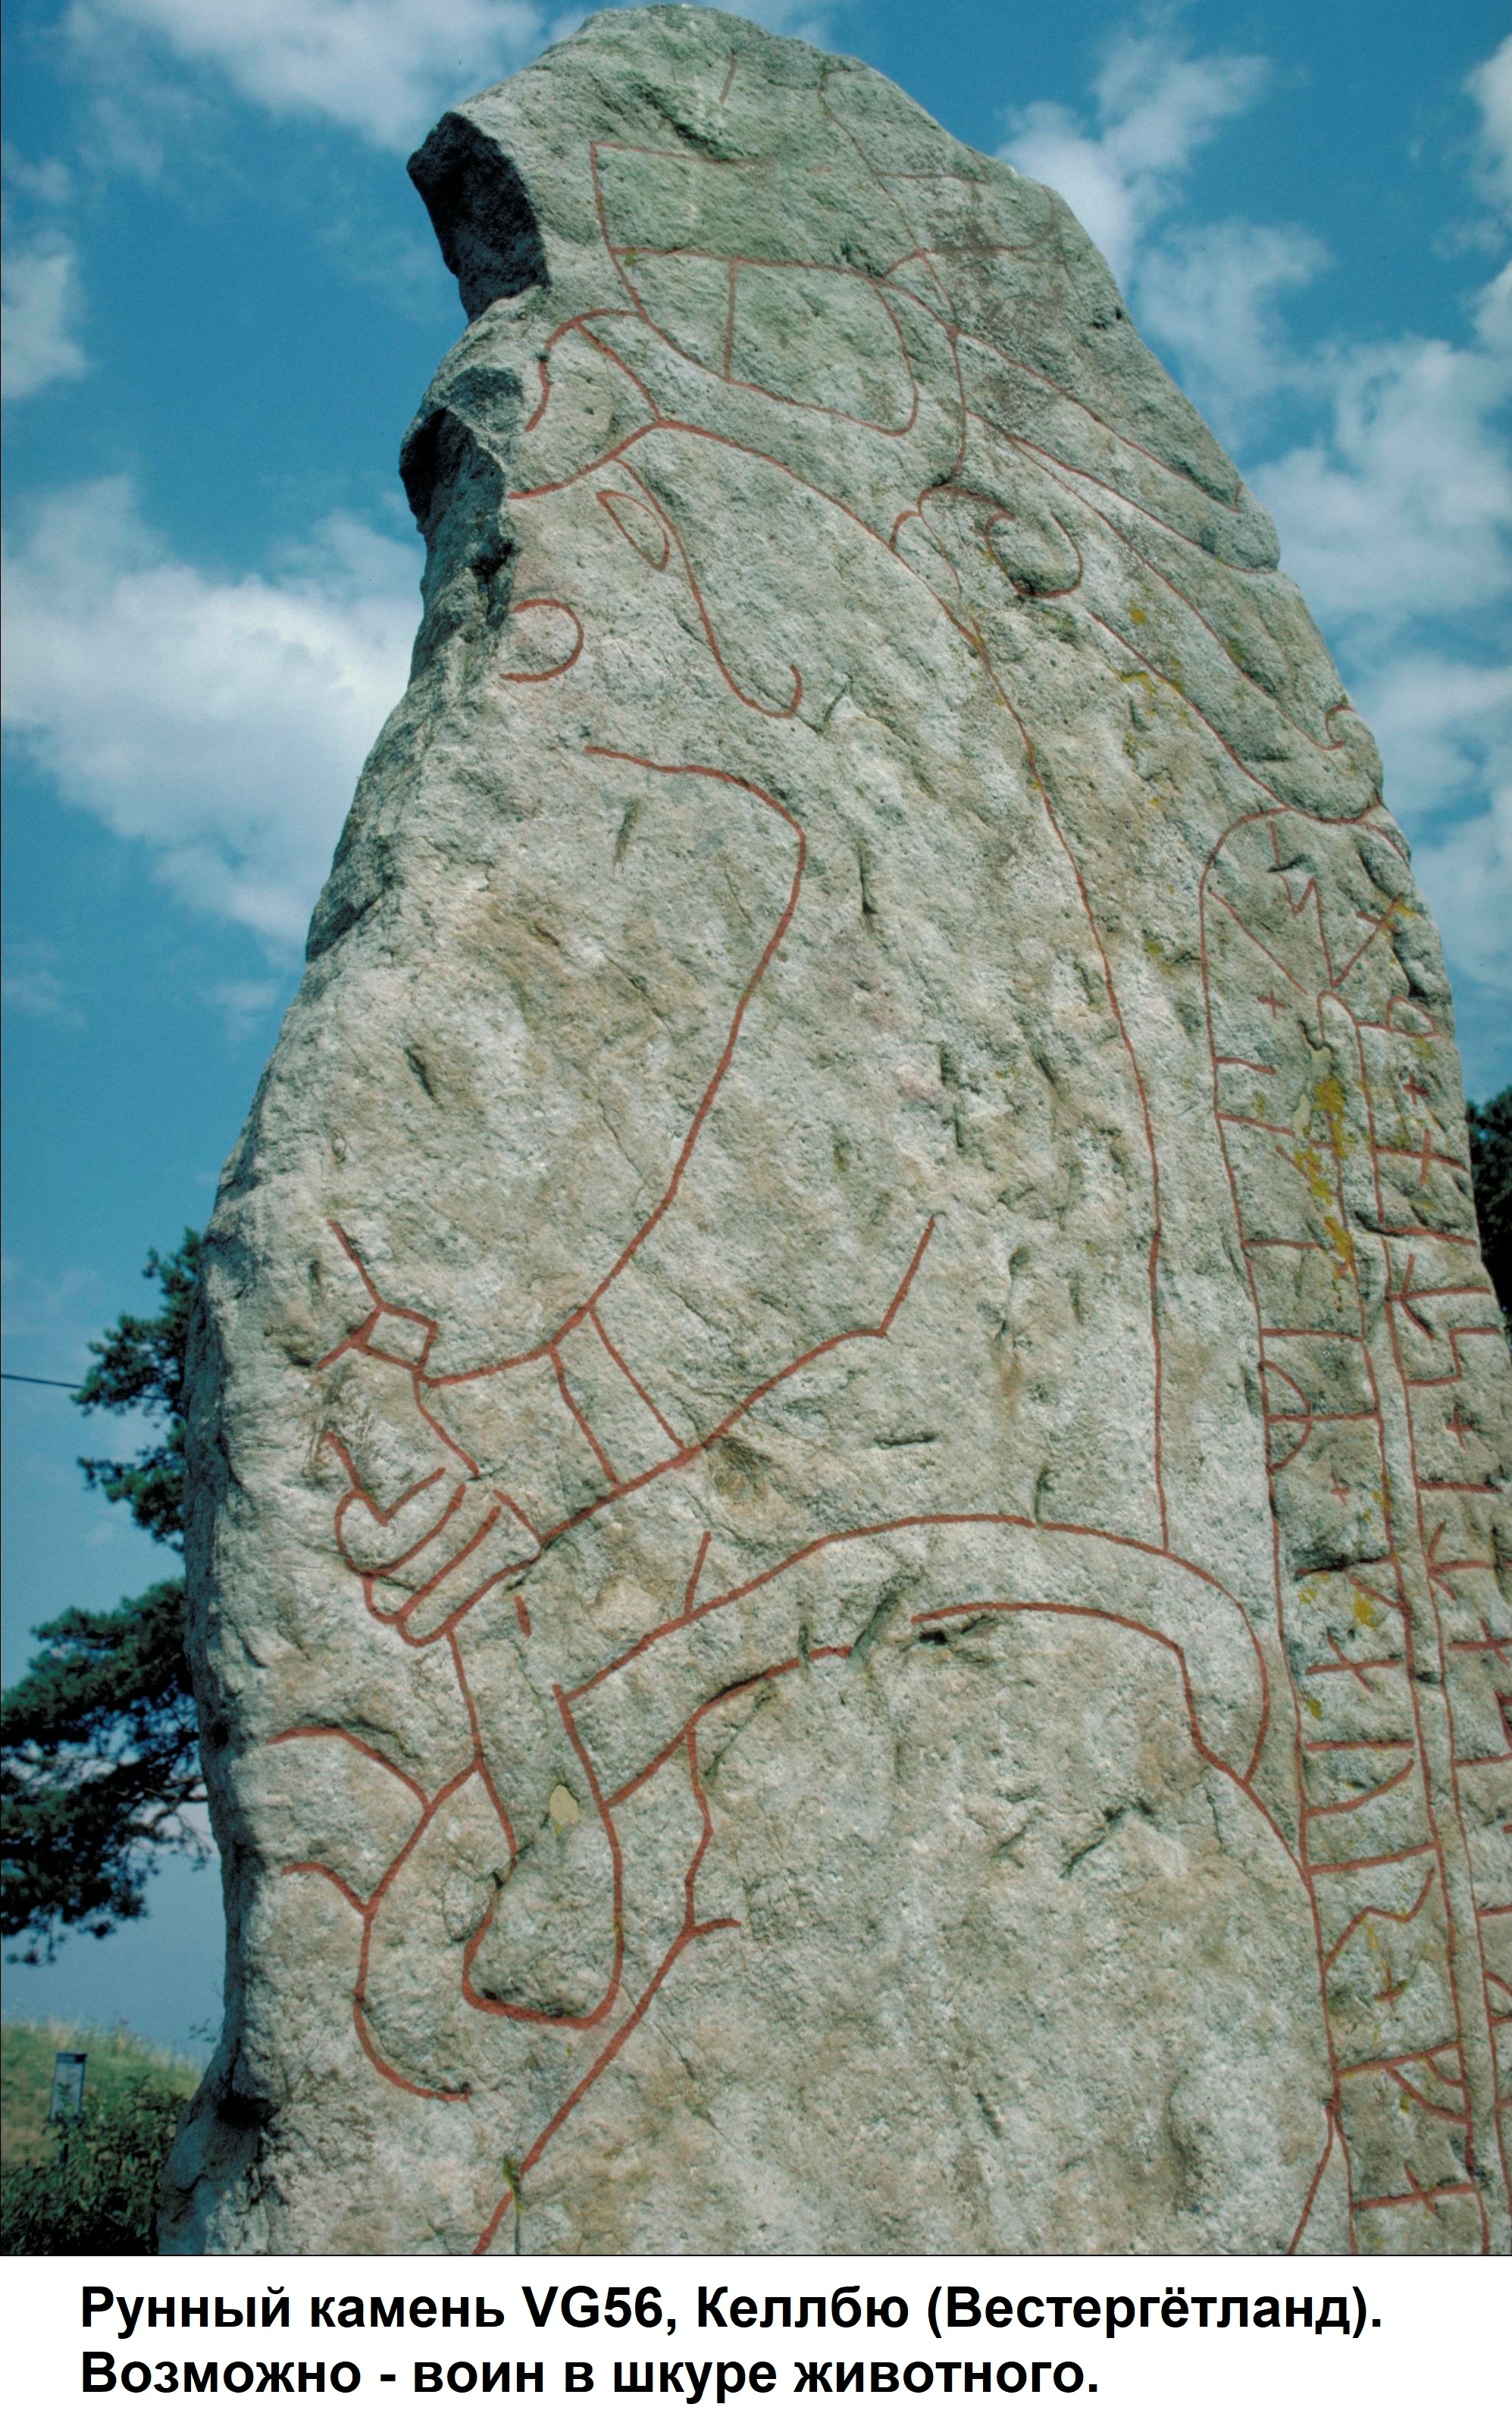 Рунный камень VG56 в Келлбю в Вестергётланде, на котором может быть изображен берсерк в шкуре животного